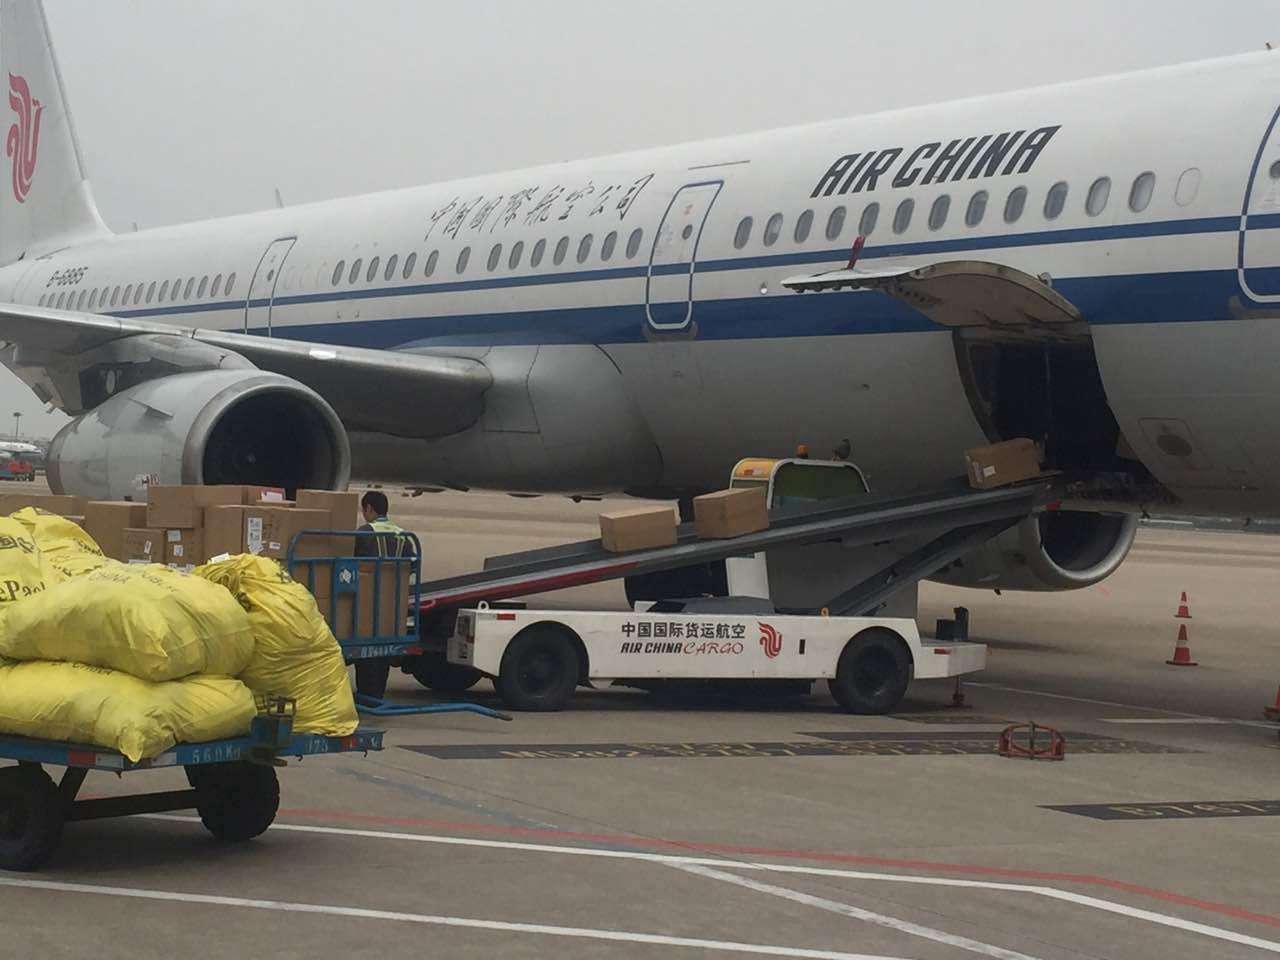 武汉机场航空货运 货物托运如何办理